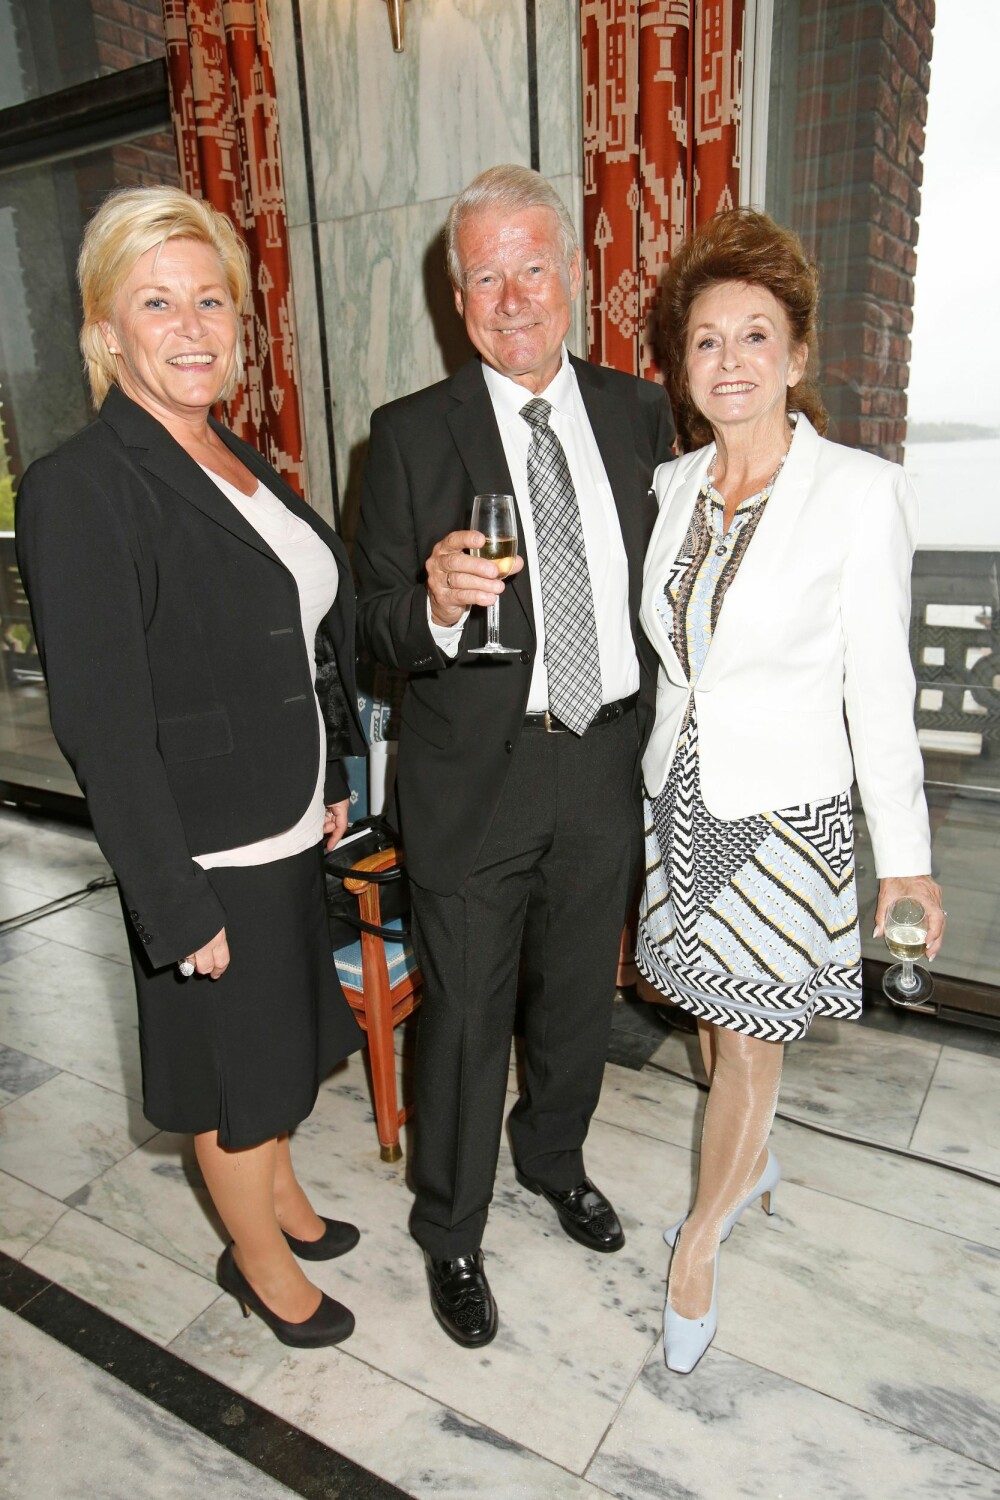 70 ÅR: Carl I. Hagen ble gratulert av fru Eli (t.h.) og Frp-leder Siv Jensen på den store dagen.